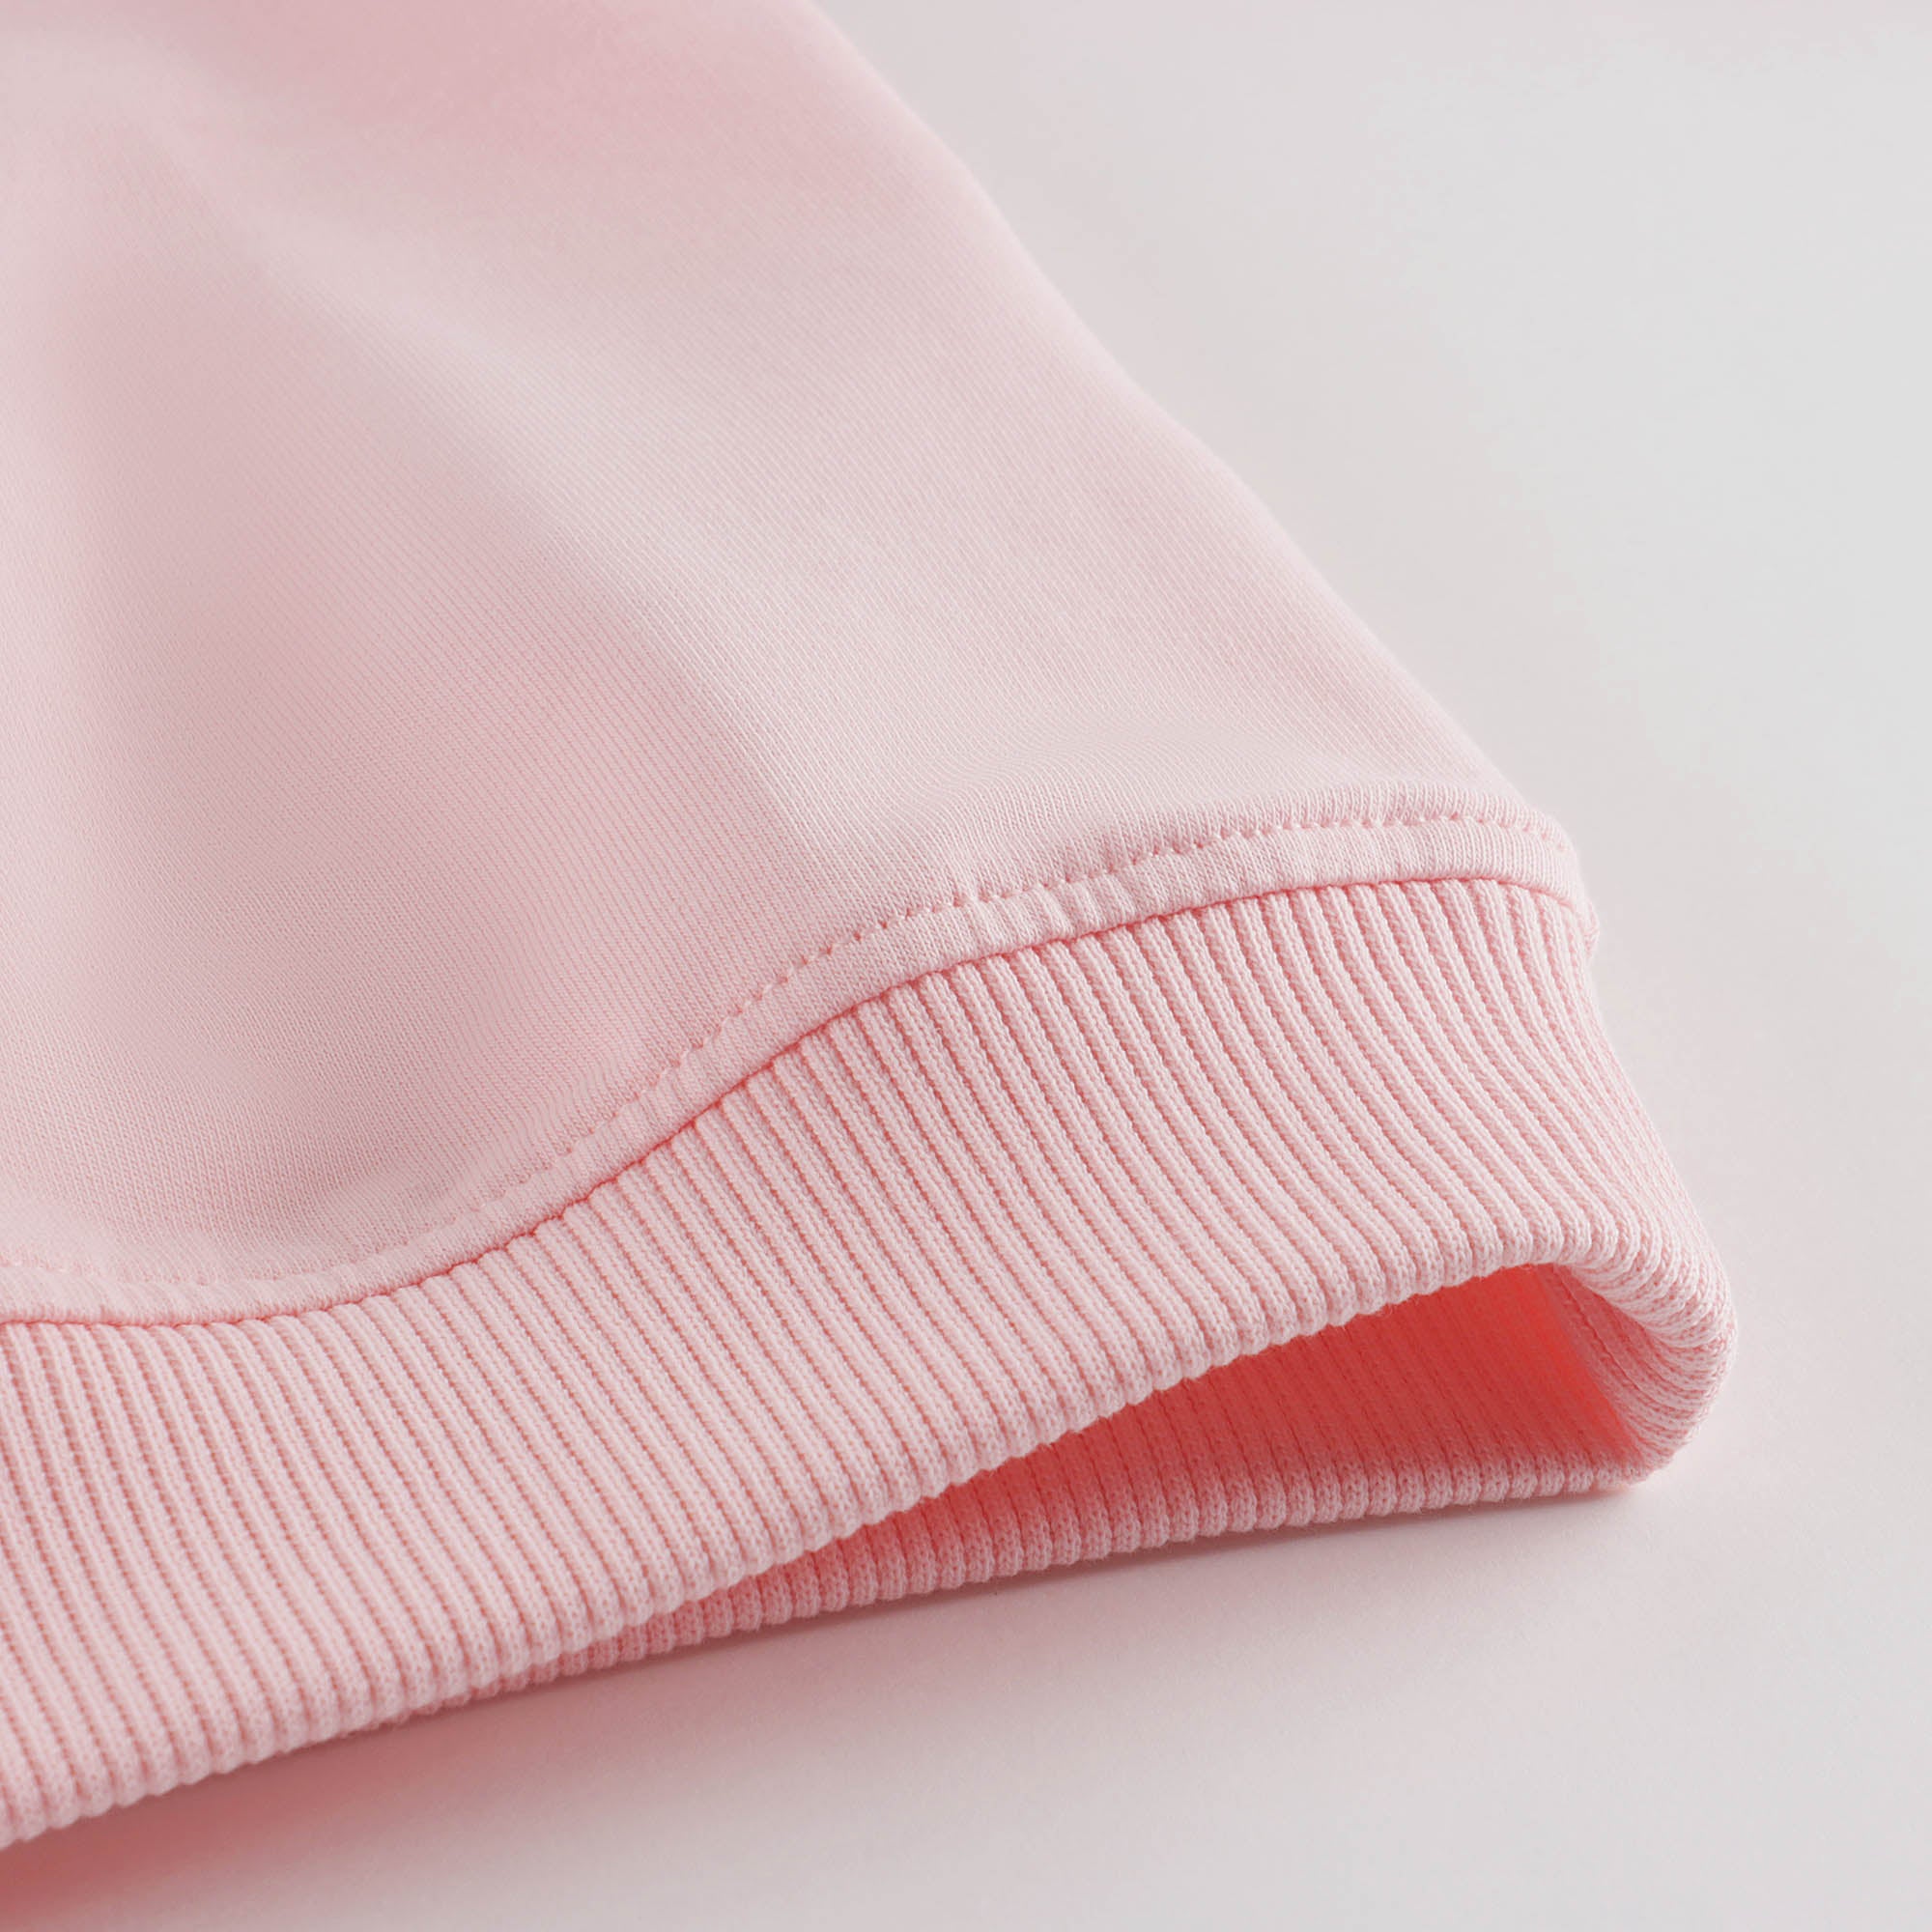 Girls Pink Logo Cotton Sweatshirt